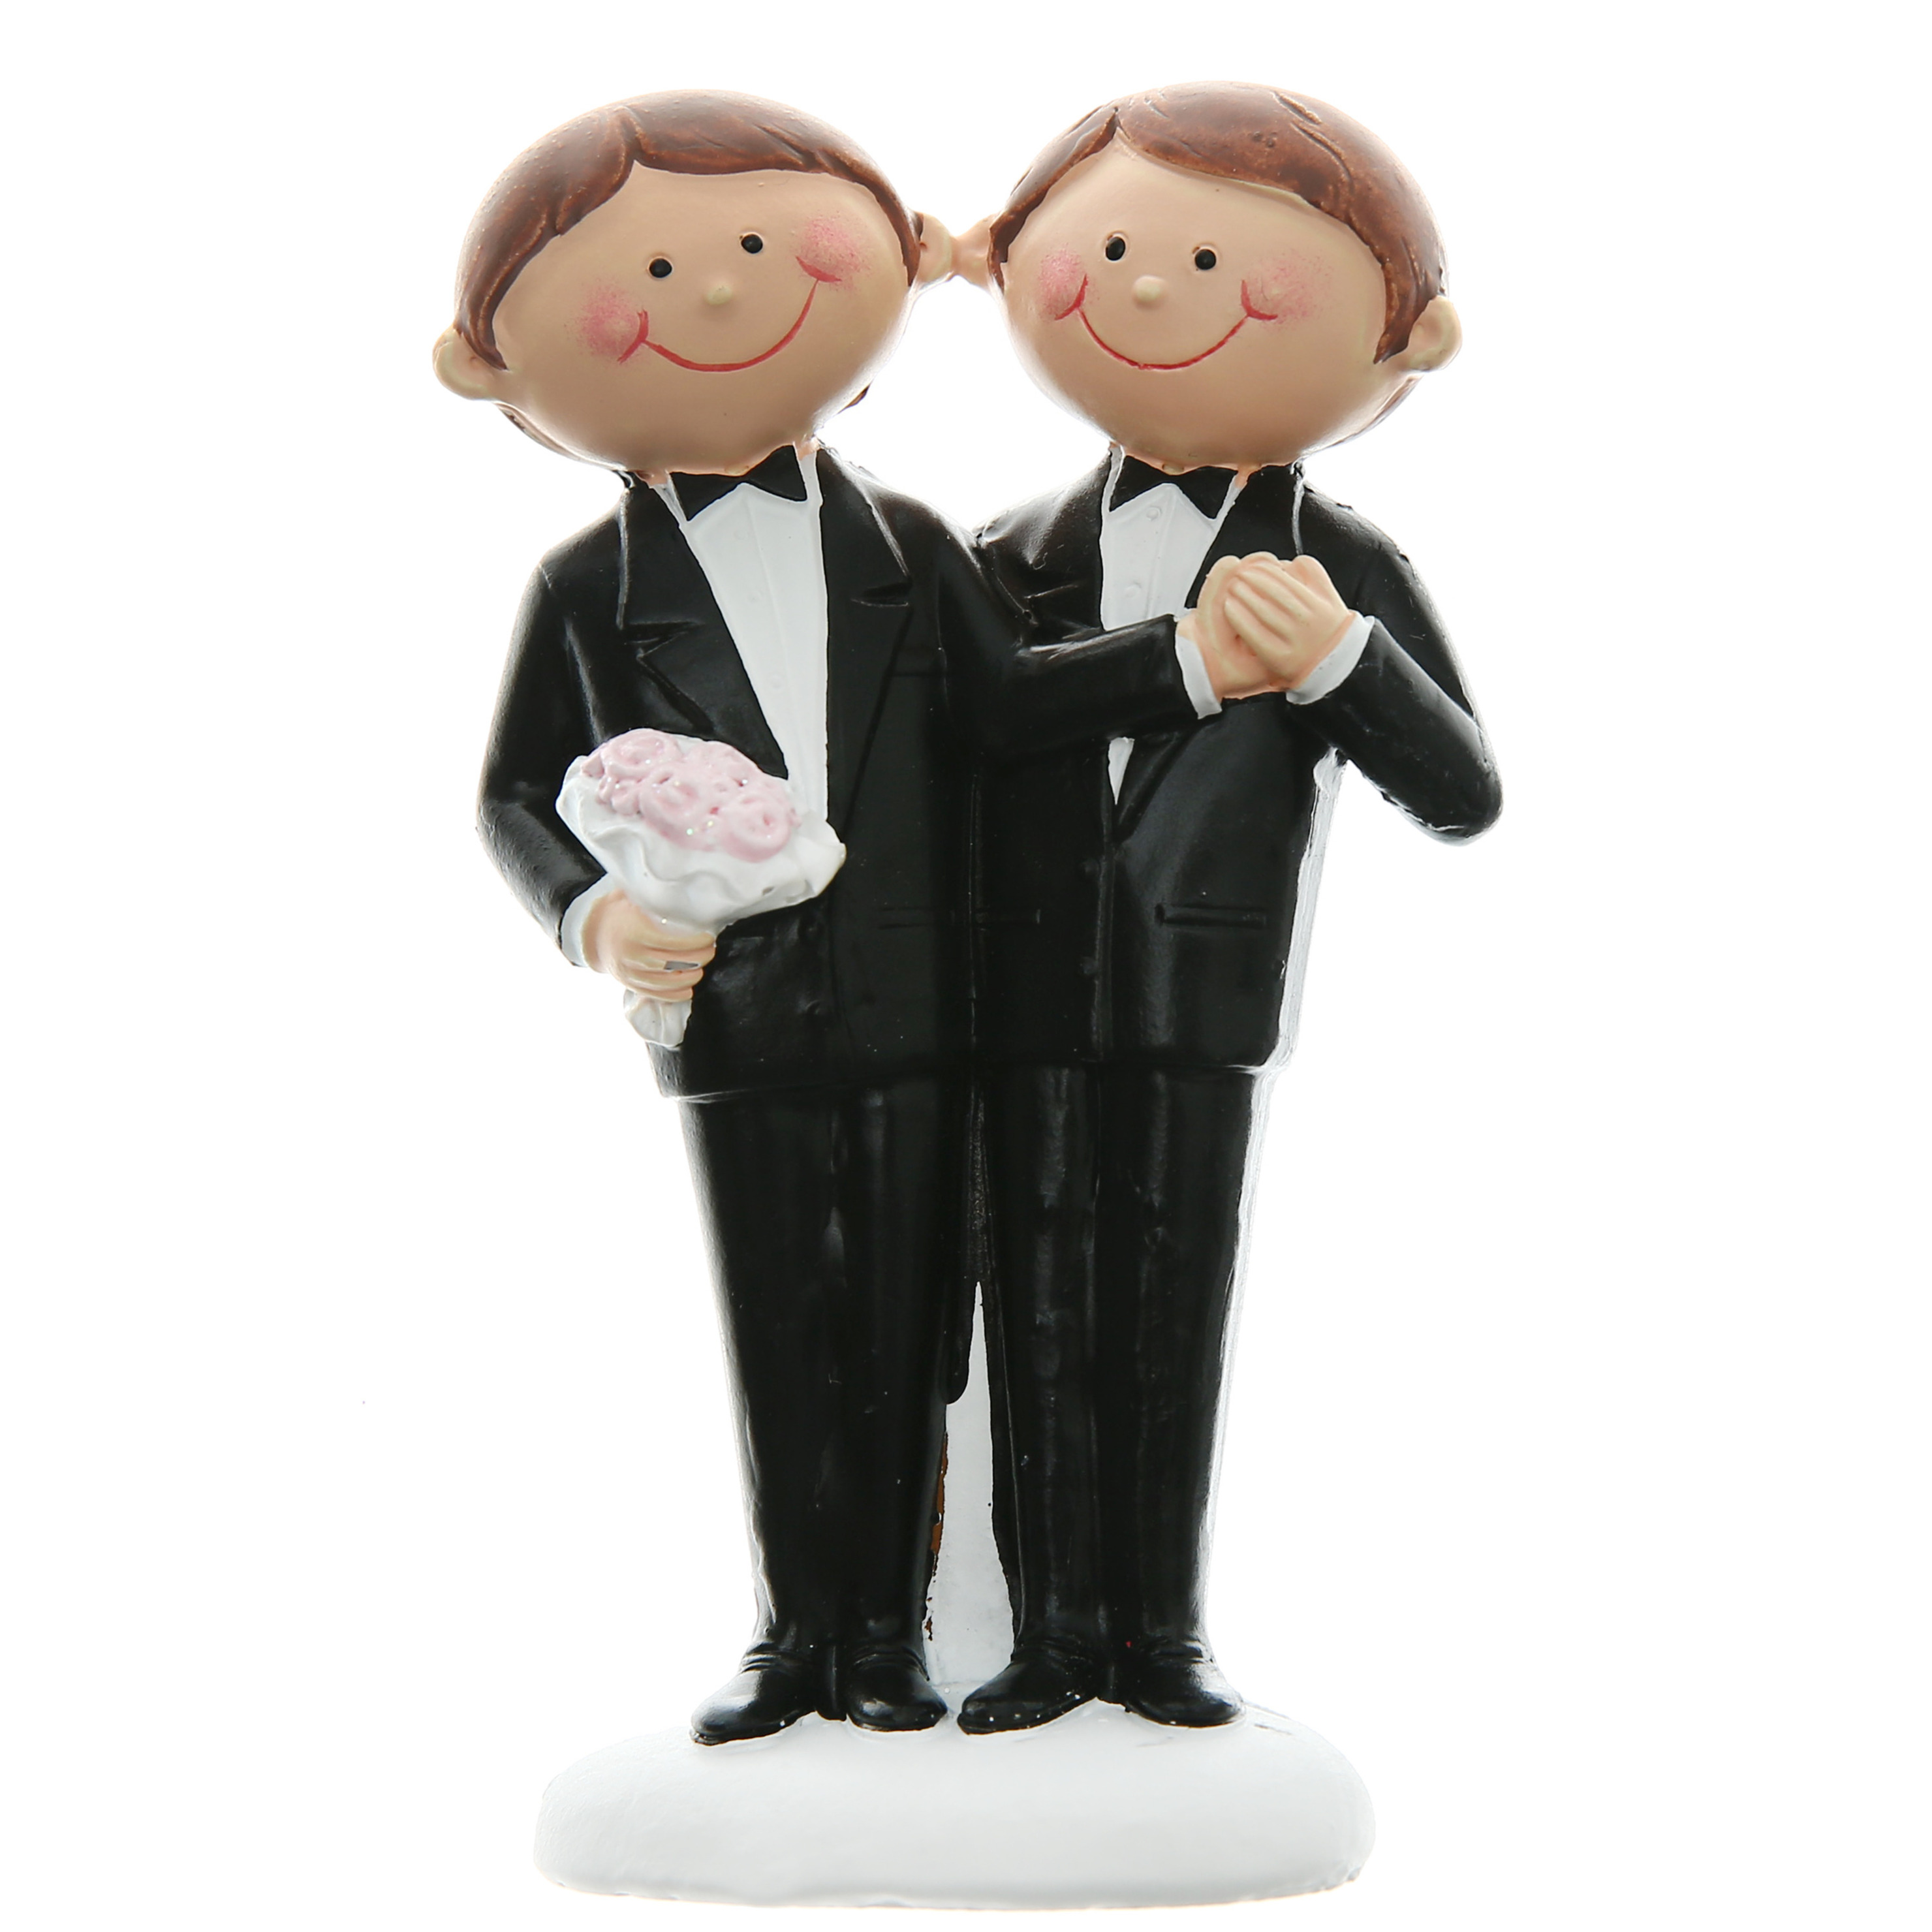 Trouwfiguurtje/caketopper bruidspaar - 2 mannen gay koppel - Bruidstaart figuren - 5 x 10 cm